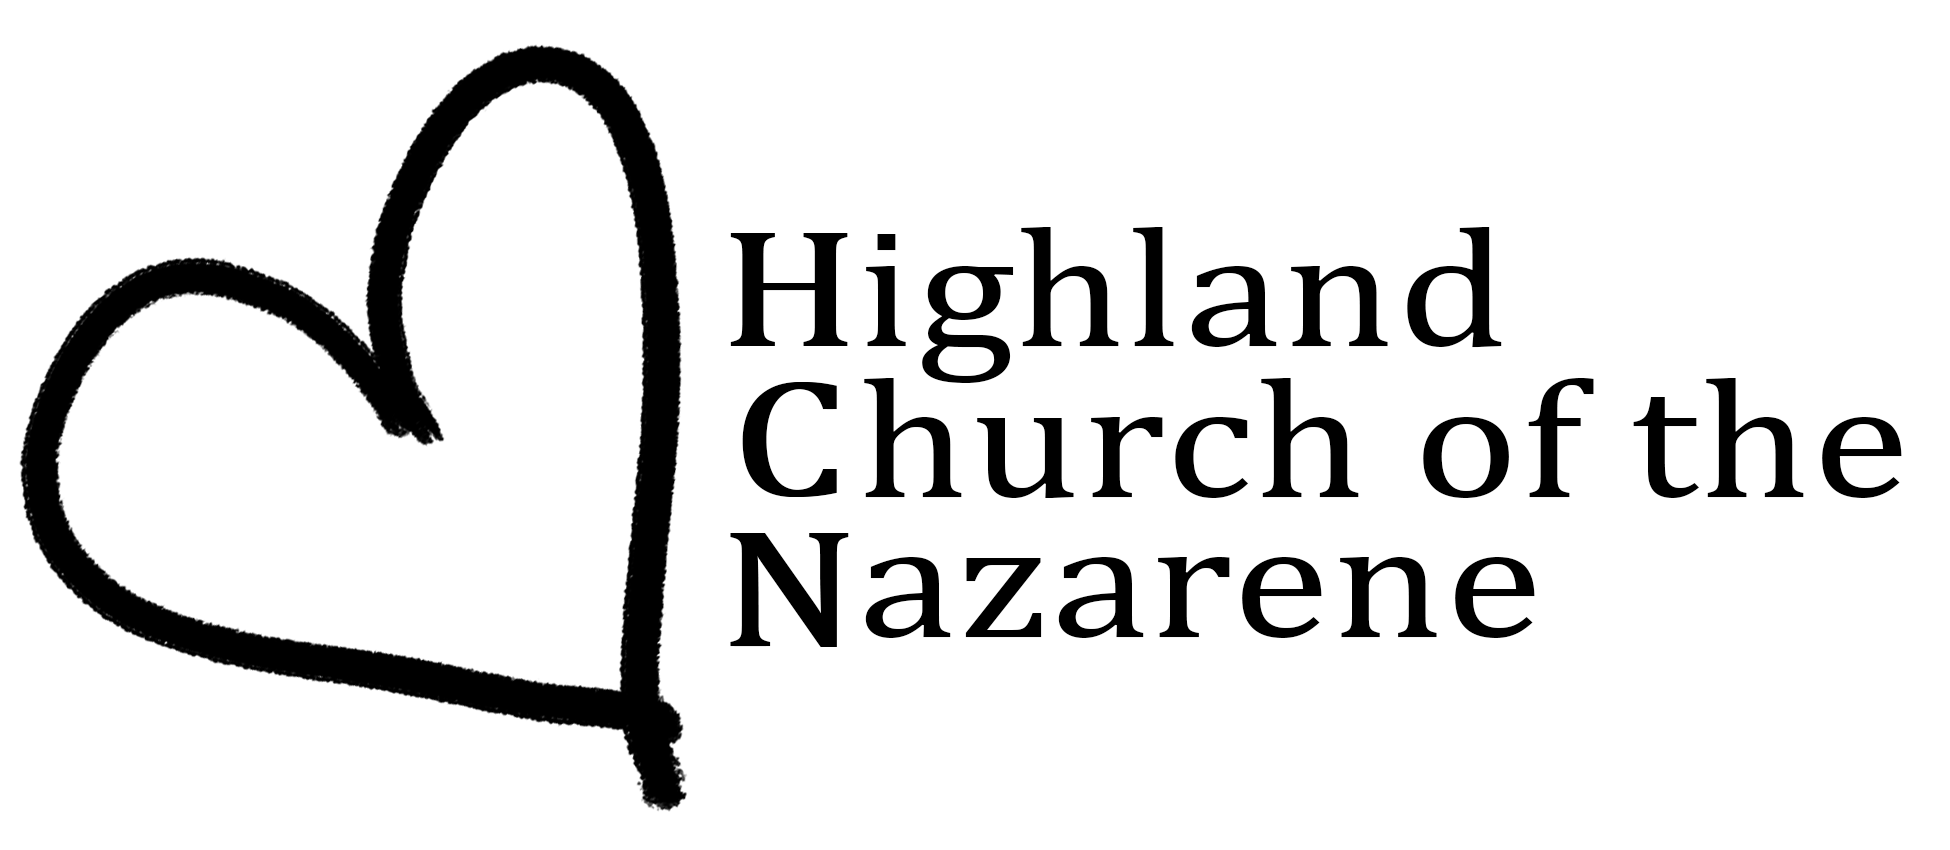 Highland Church of the Nazarene